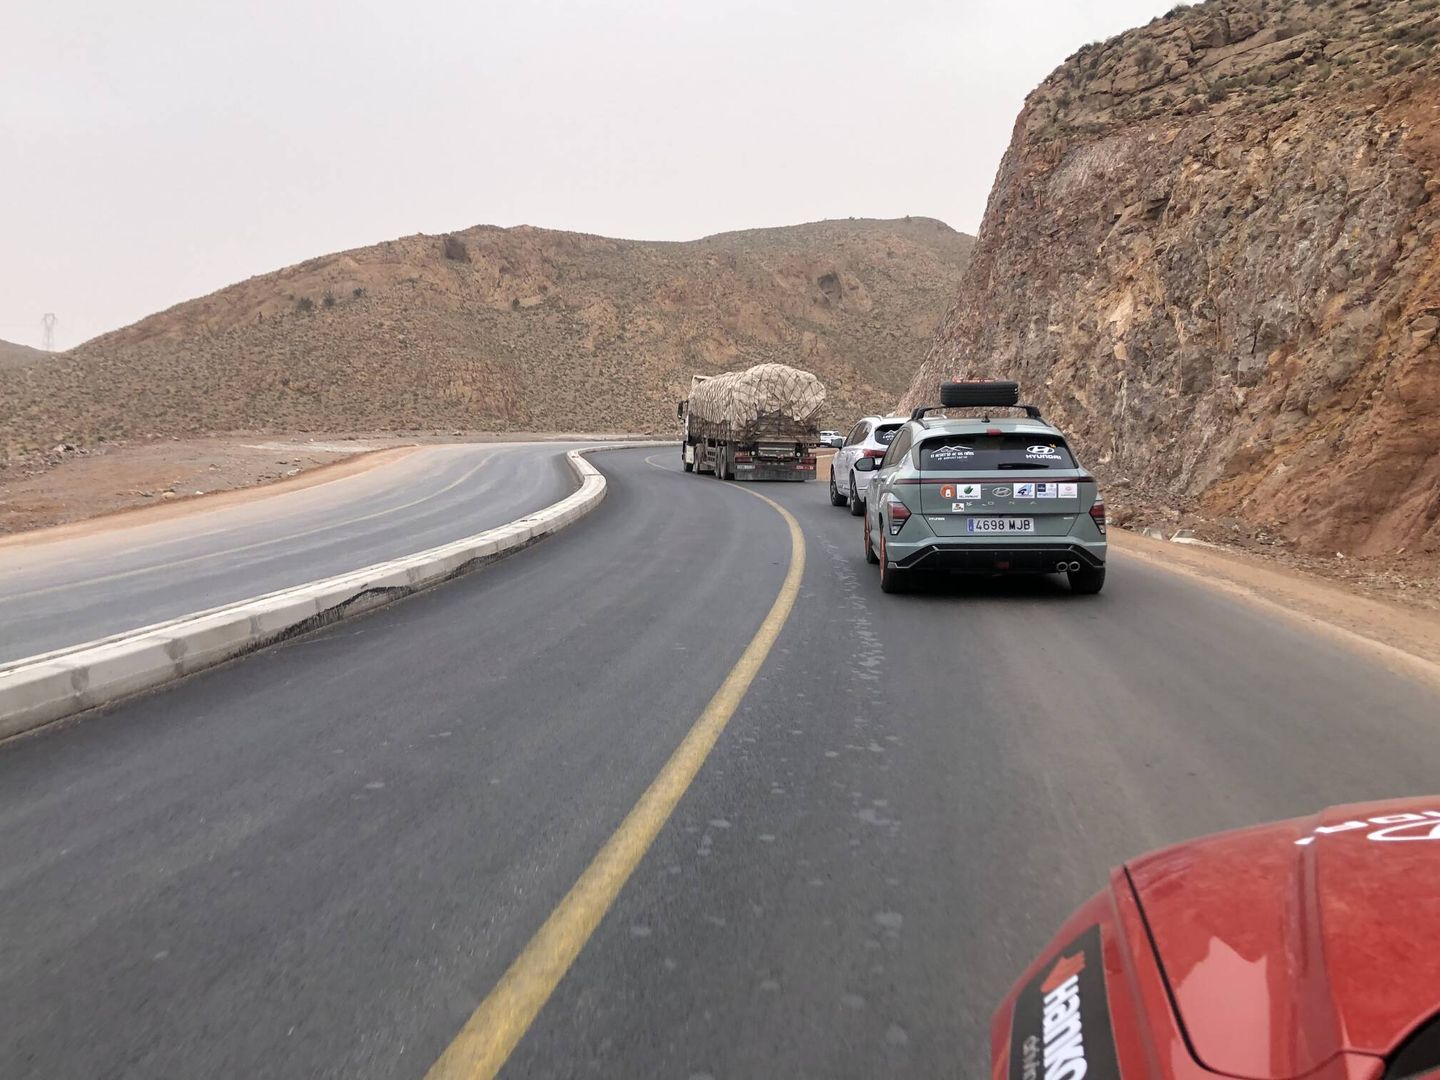 Las carreteras han mejorado en la mitad sur de Marruecos en los últimos años.